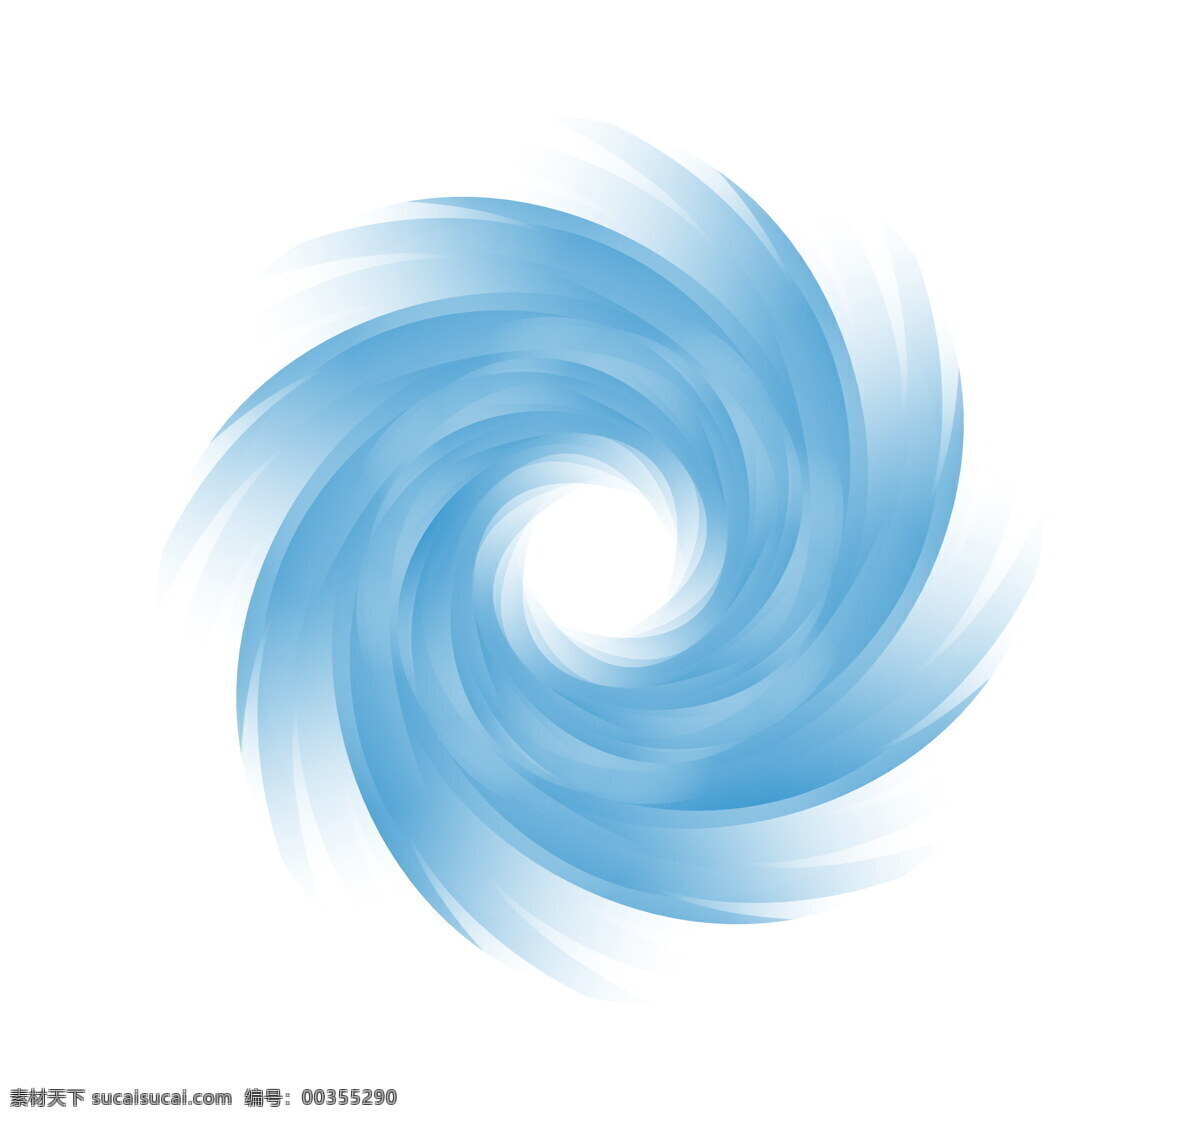 蓝色漩涡设计 漩涡设计 蓝色漩涡 漩涡 涡 涡流 旋风